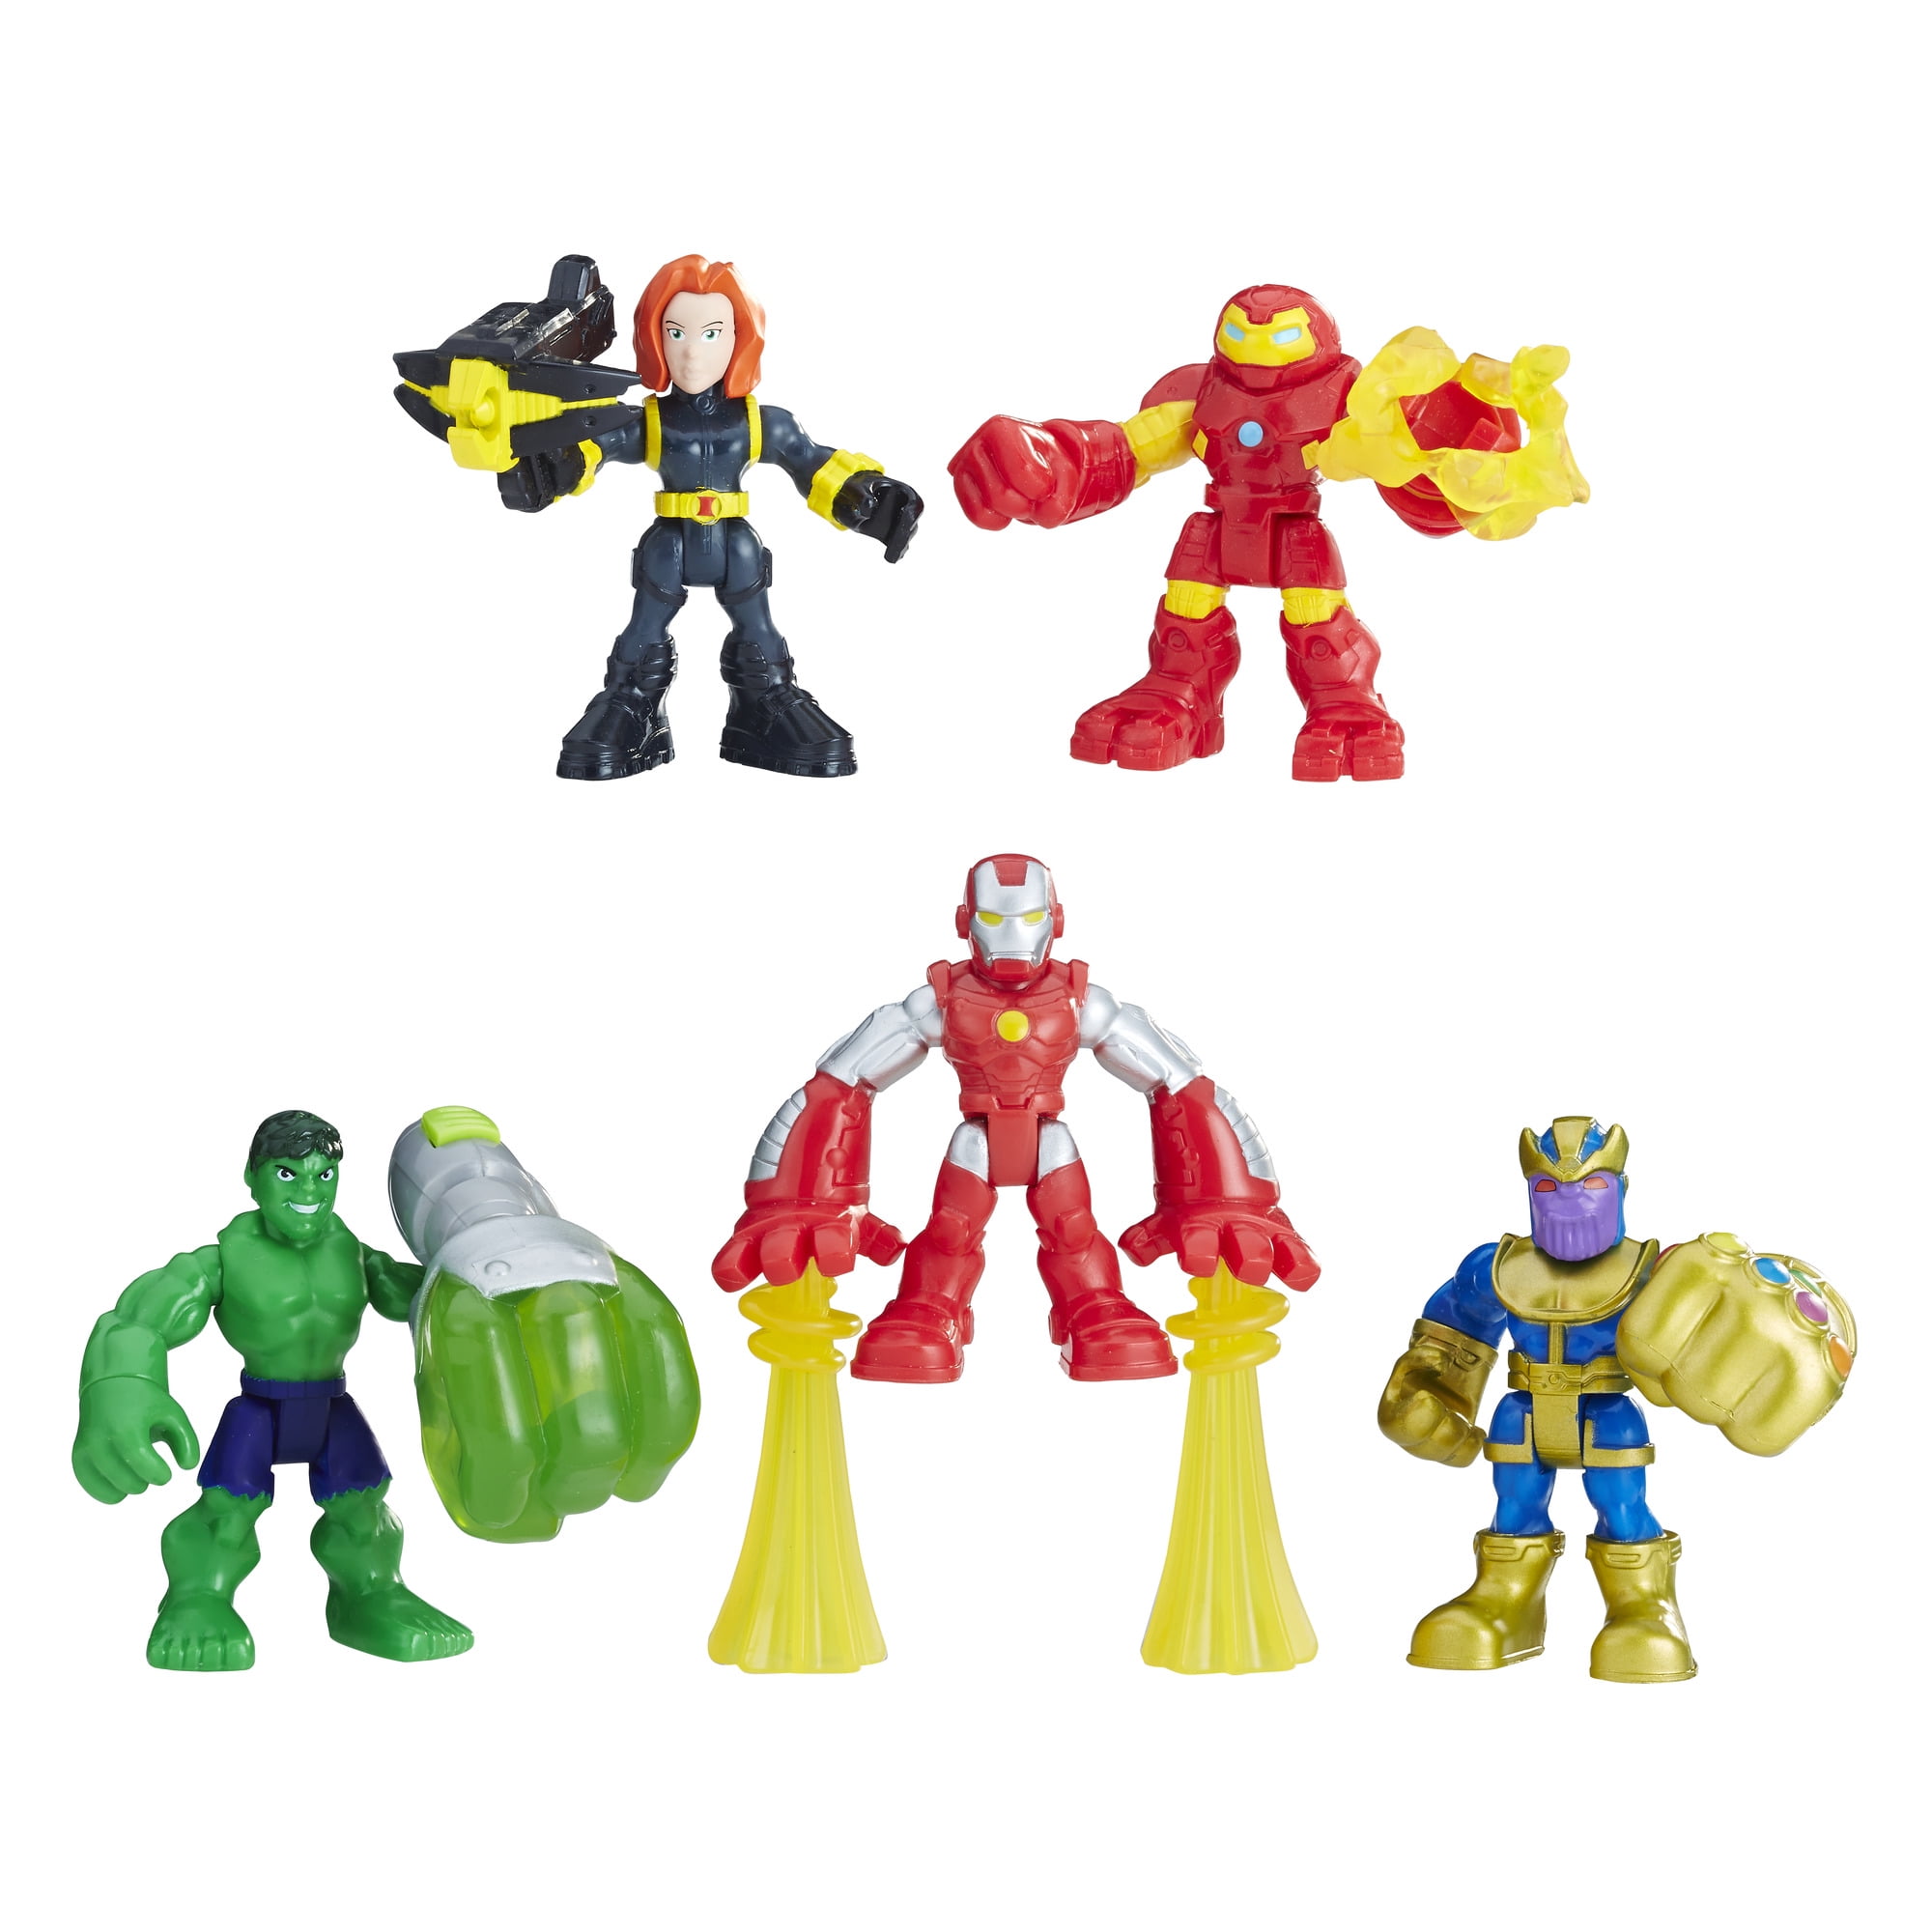 Rare Playskool Marvel Super Hero Adventures POWER UP hulk w/fist Missile Figure 